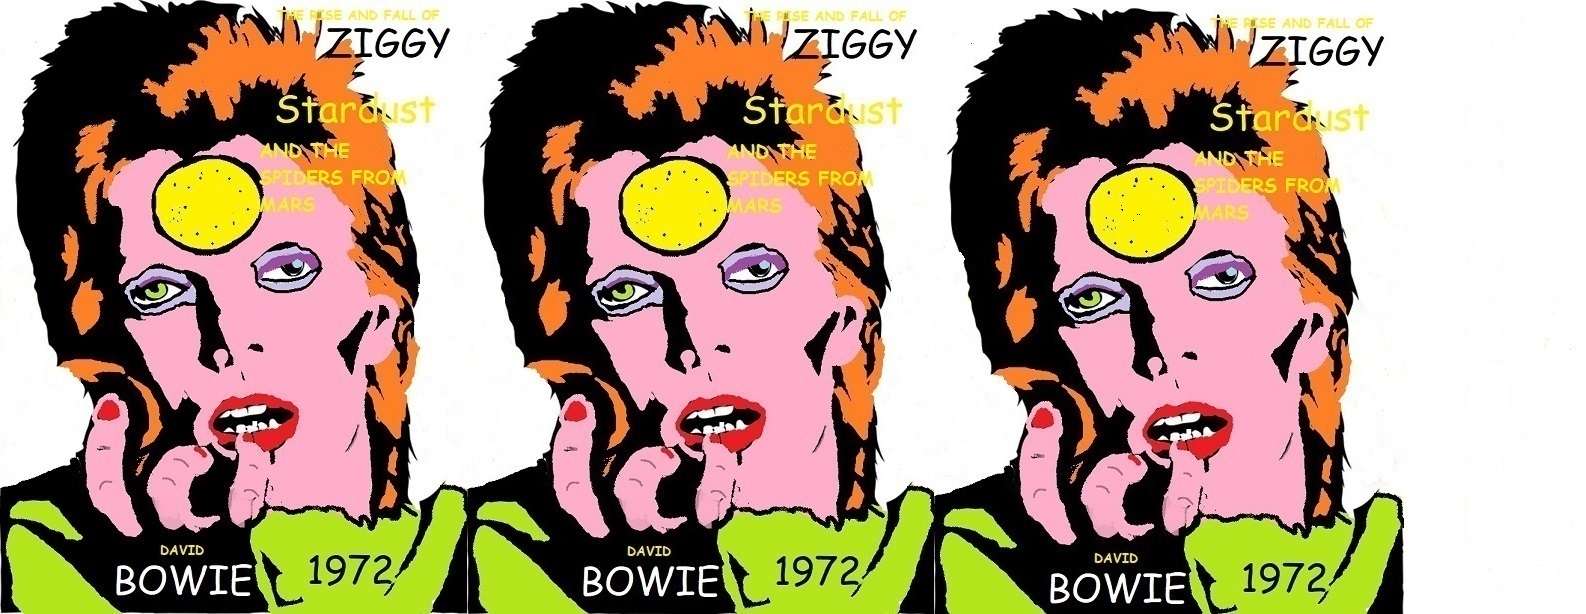 підйом і падіння Ziggy stardust онлайн пазл